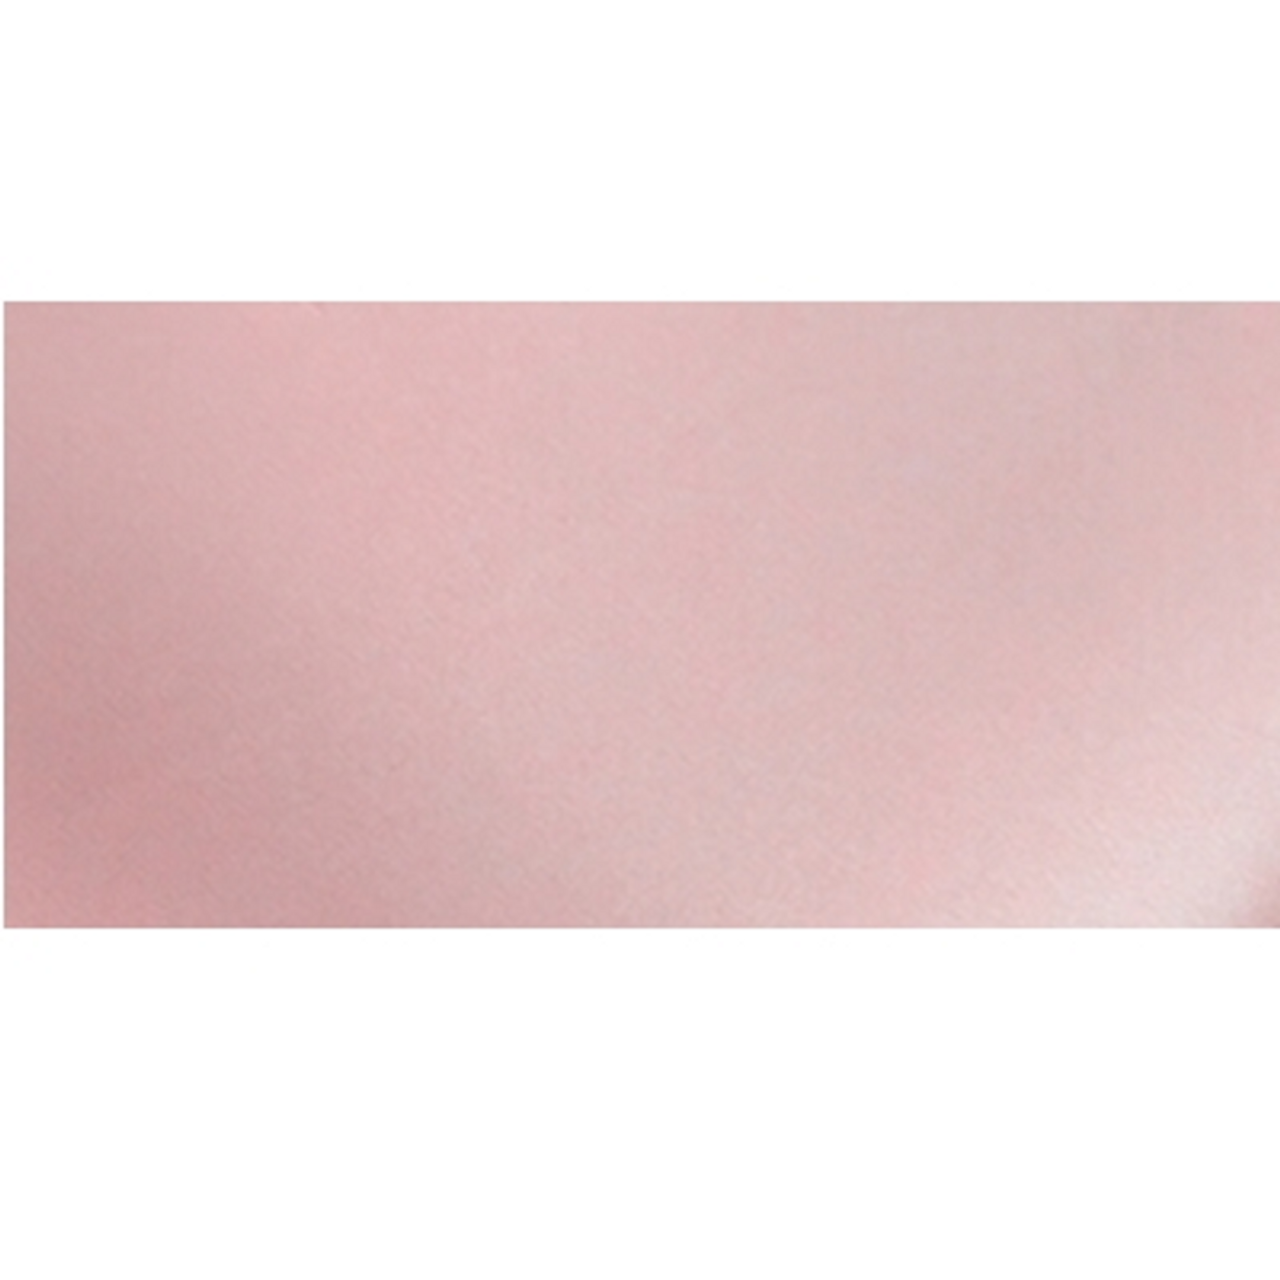 Nappe rectangulaire anti tâche – Cercles sur fond rosé - Europages